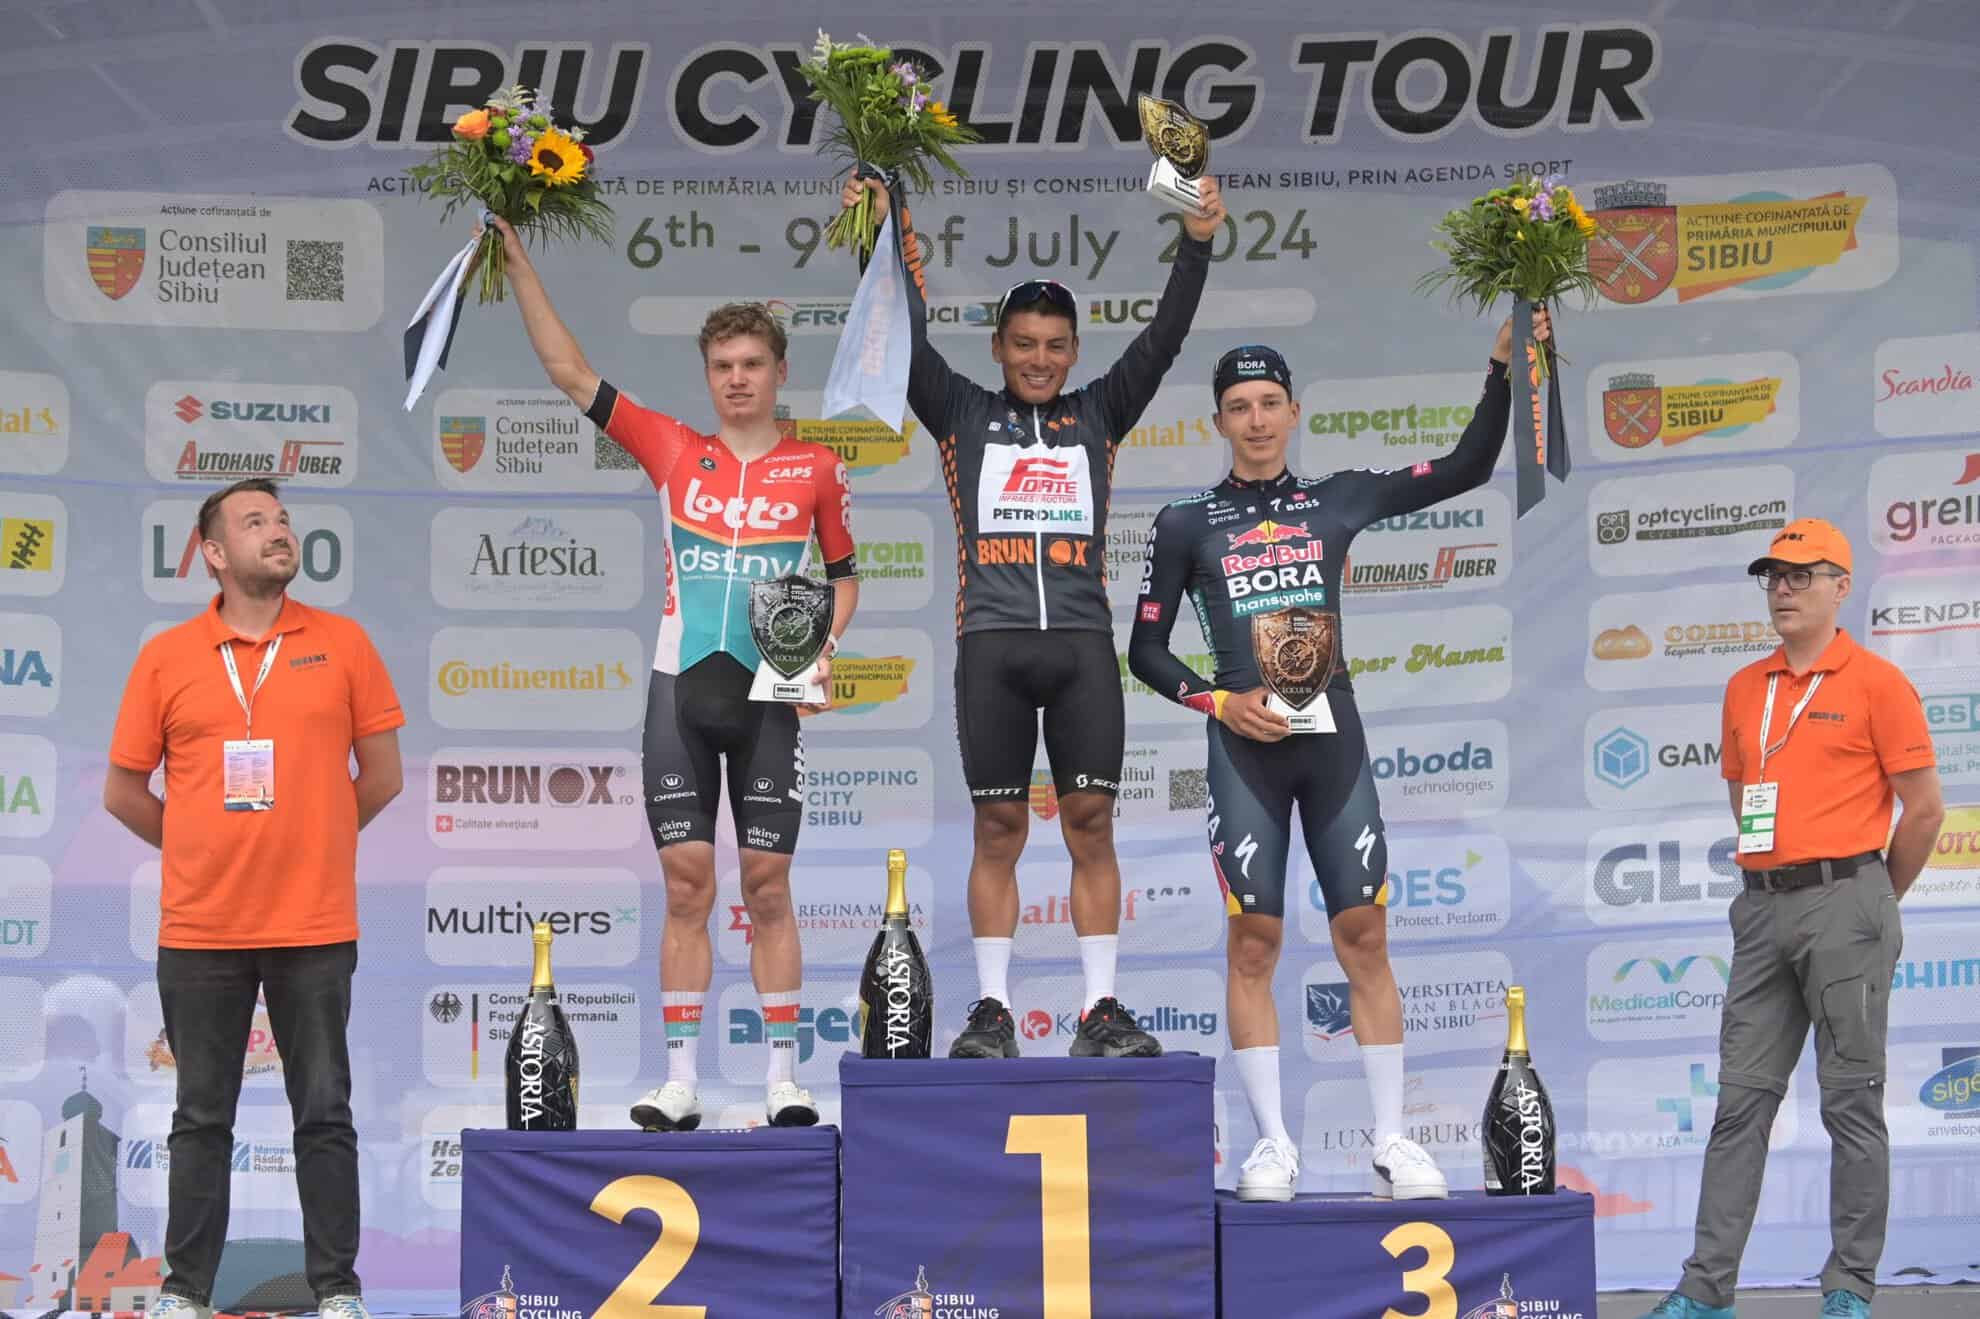 jonathan caicedo câștigă etapa a 3-a a turului ciclist al sibiului, iar florian lipowitz devine noul lider al clasamentului general (foto)